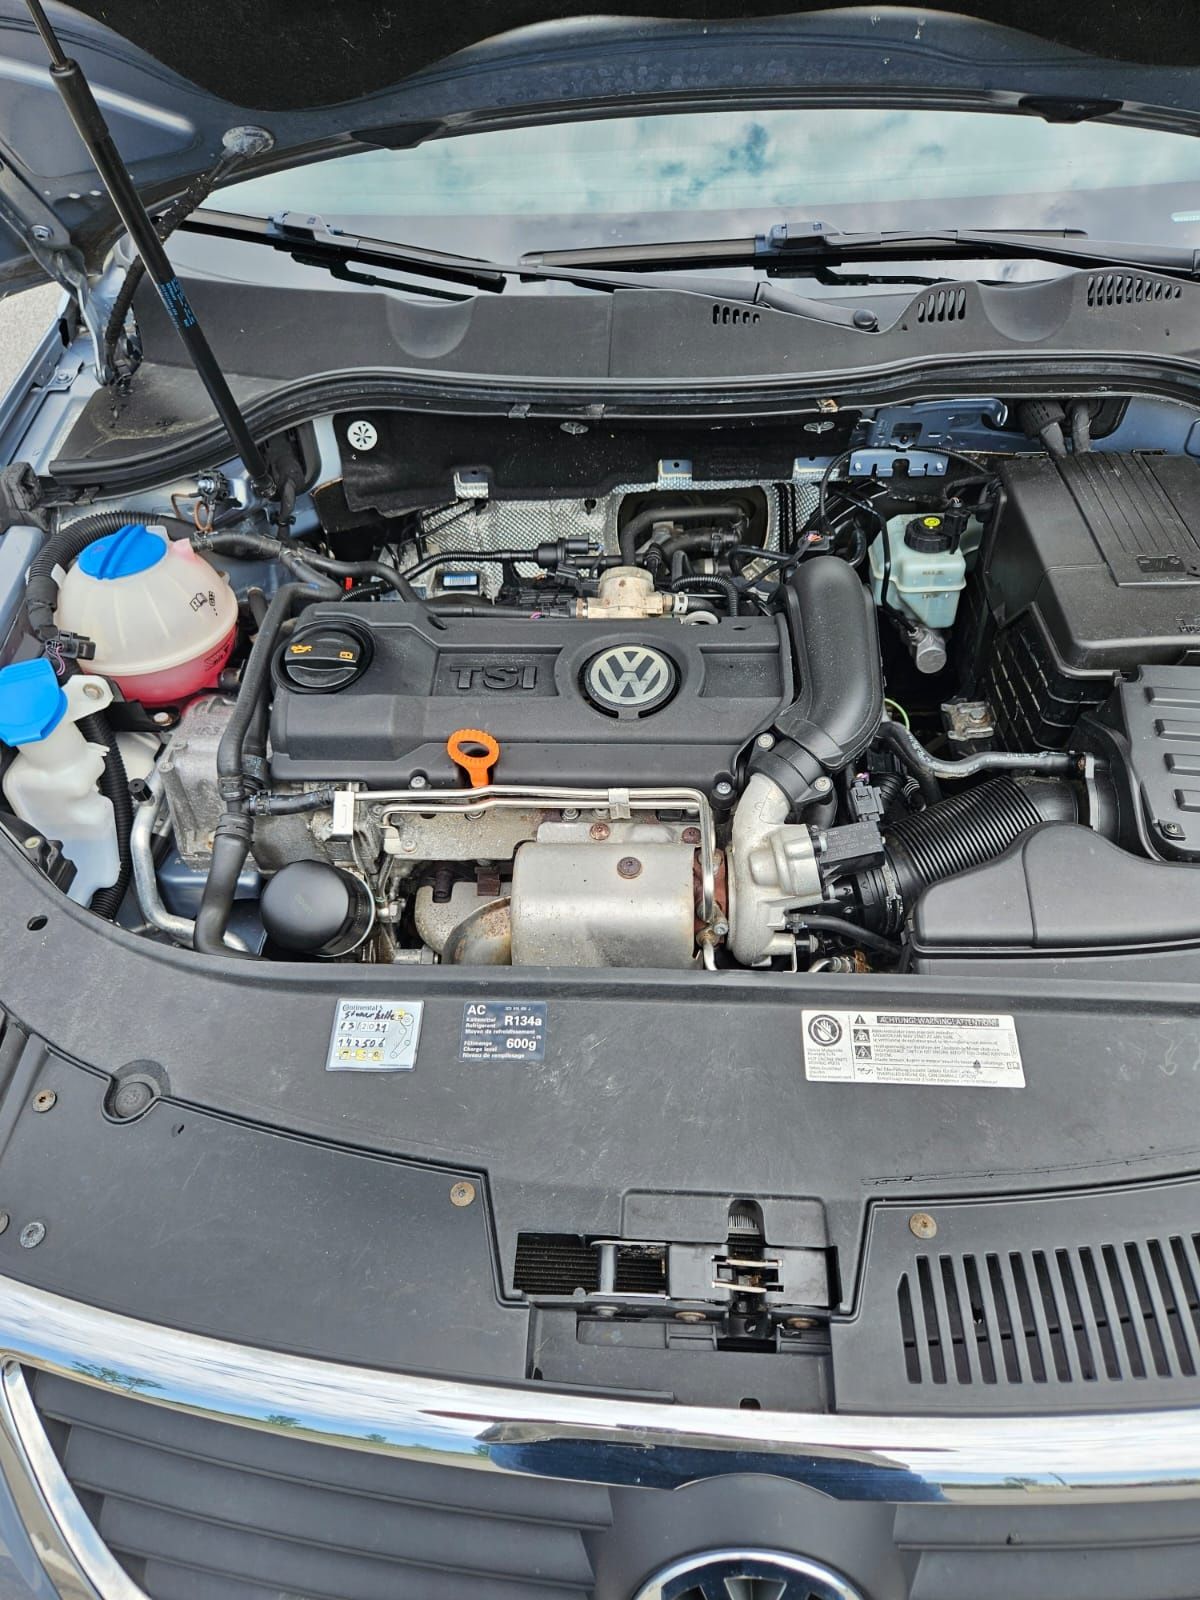 Volkswagen Passat euro 5 benzina